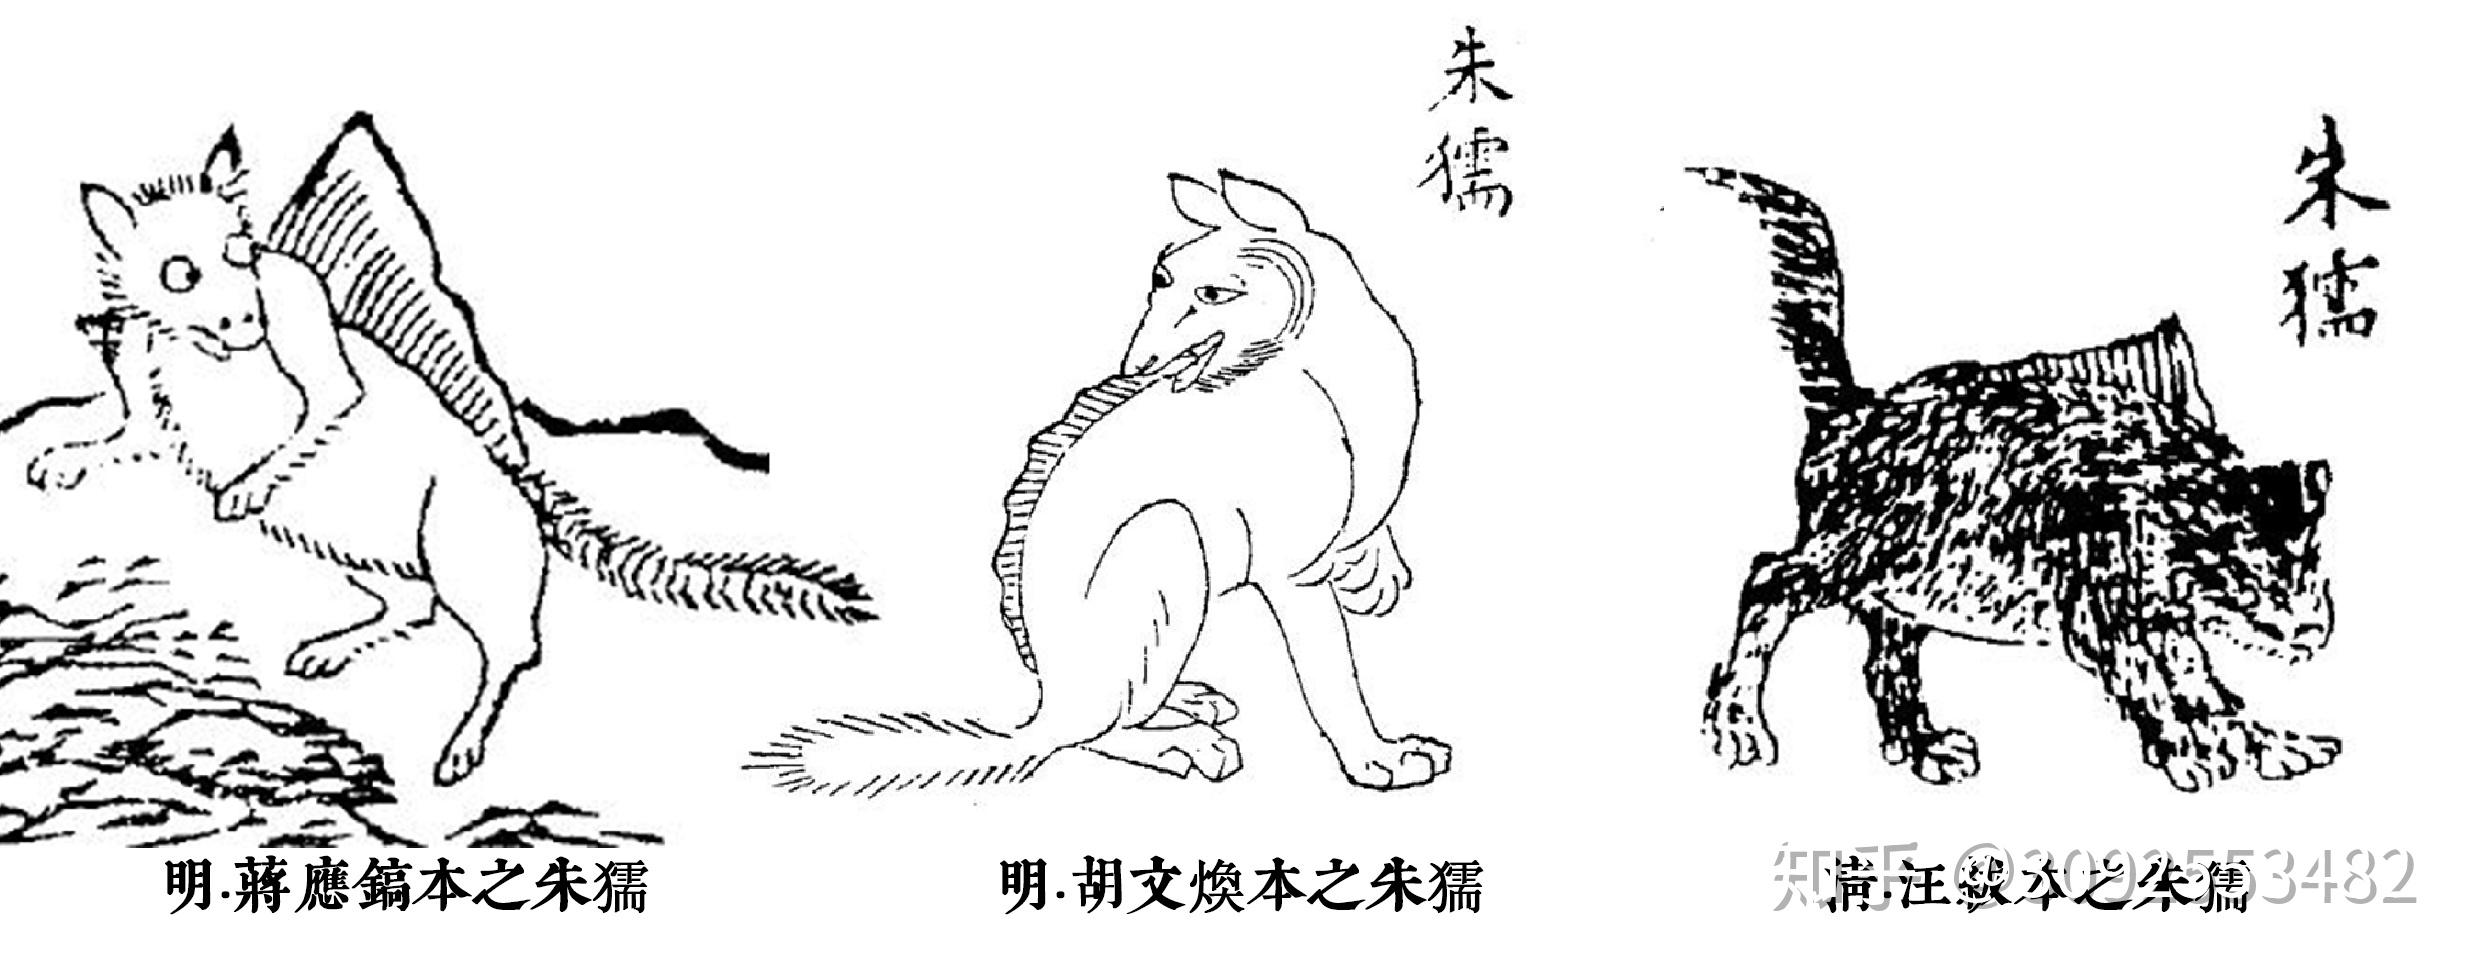 狐文化特辑【二】中国狐文化的早期形态插图(5)